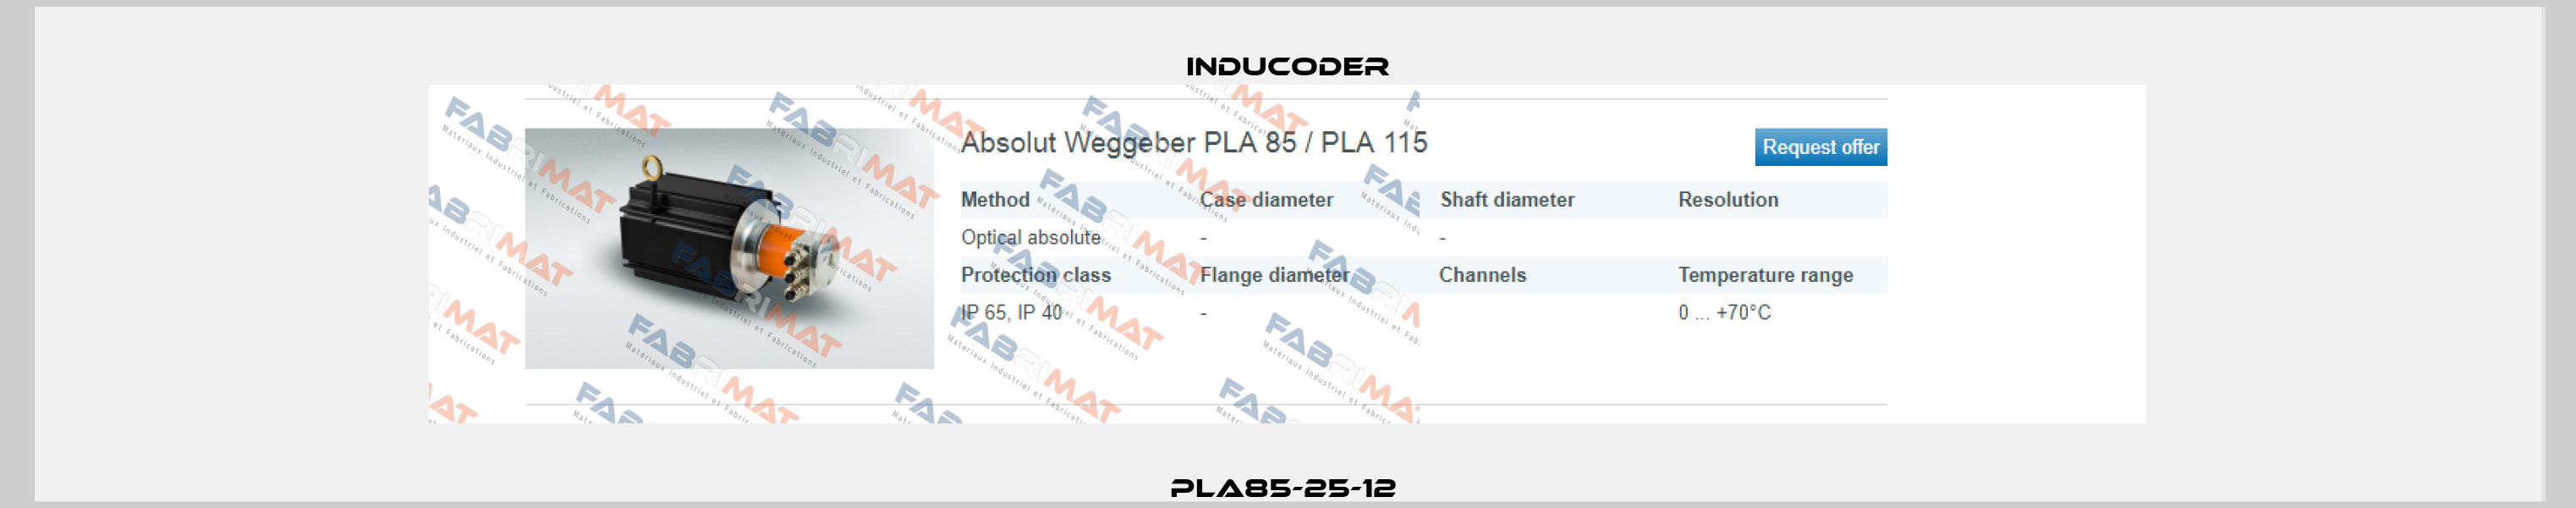 PLA85-25-12  Inducoder